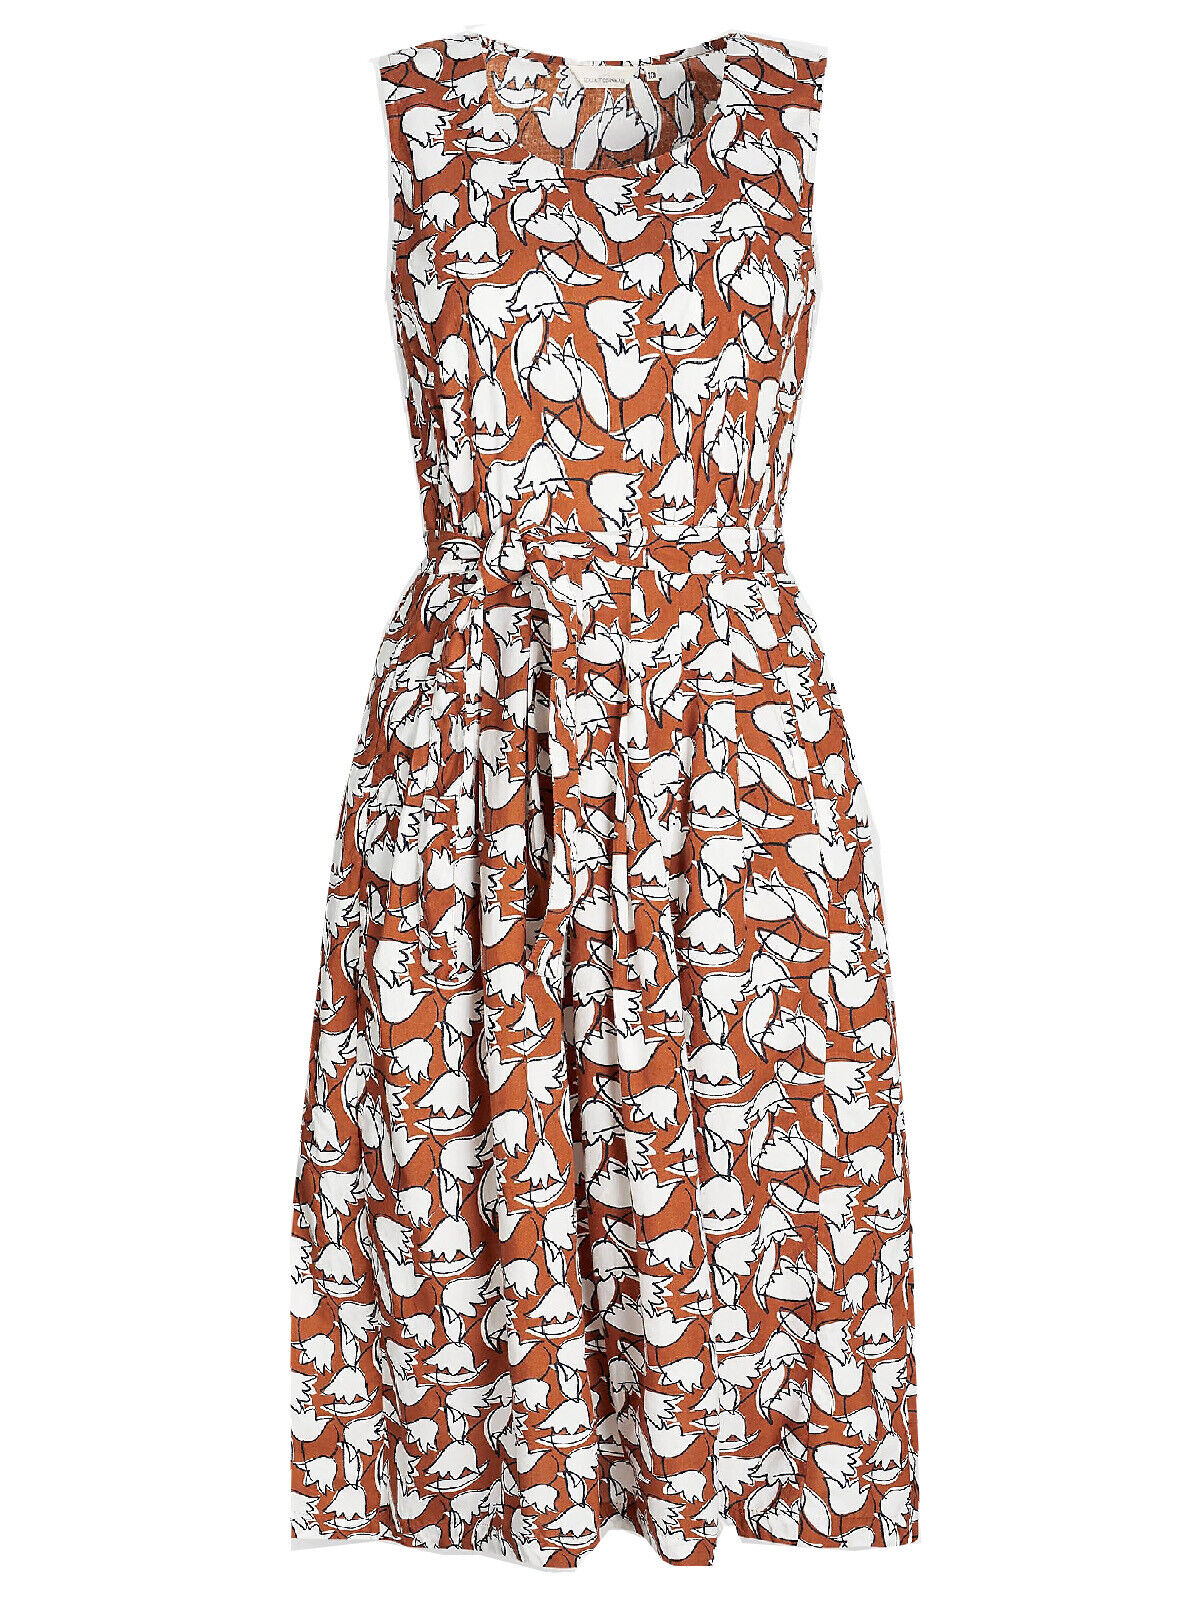 EX SEASALT Brown Tulip Print Belle Dress Sizes 8 10 12 14 16 18 20 RRP £69.95